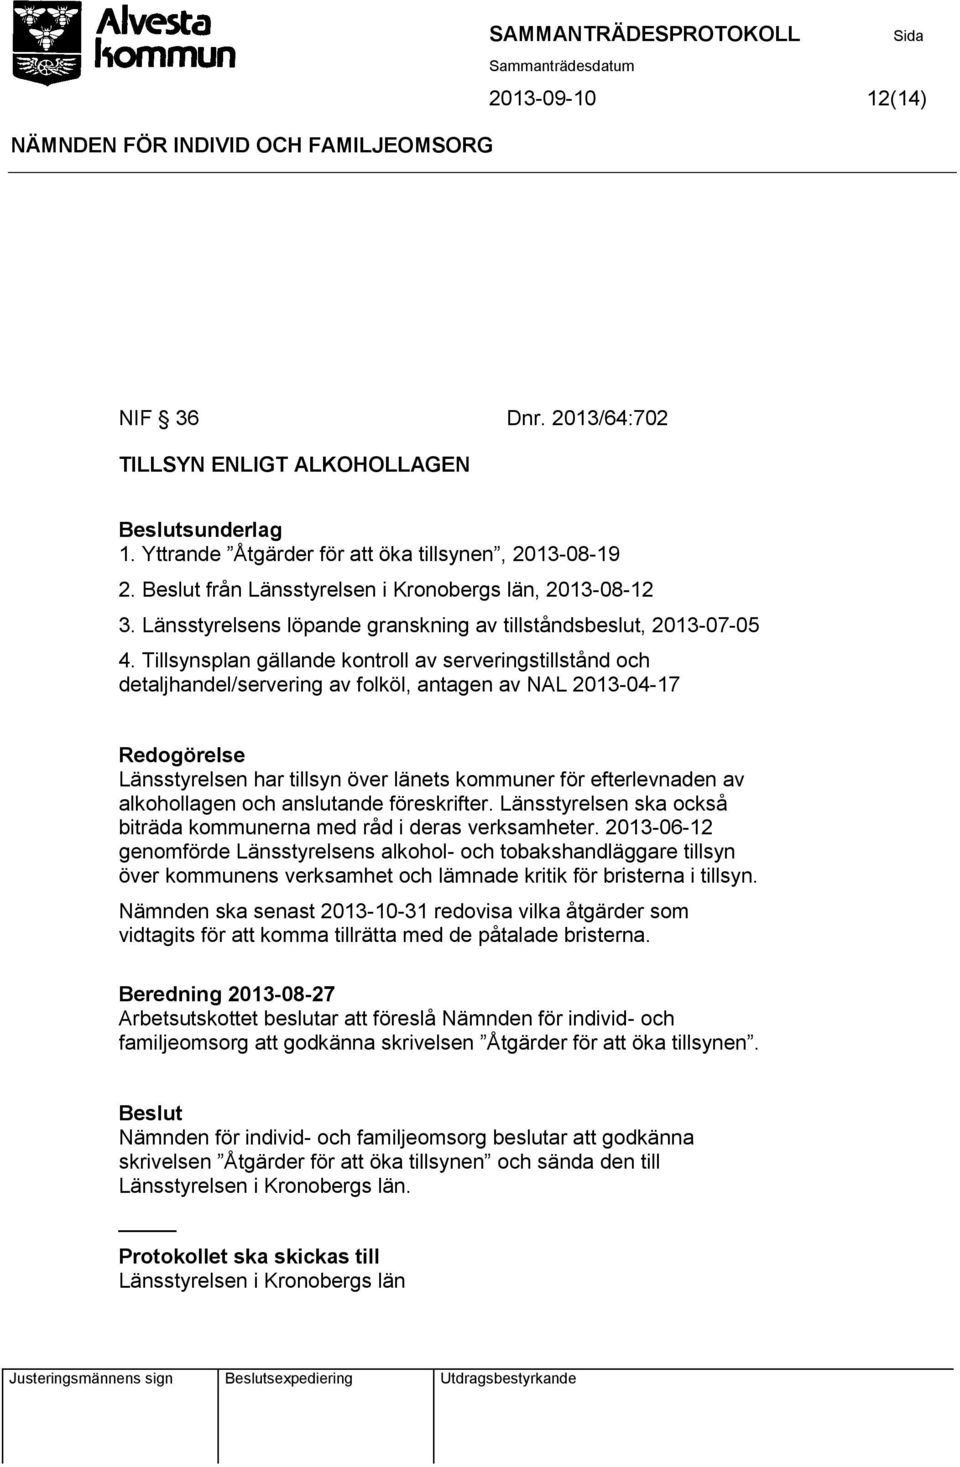 Tillsynsplan gällande kontroll av serveringstillstånd och detaljhandel/servering av folköl, antagen av NAL 2013-04-17 Länsstyrelsen har tillsyn över länets kommuner för efterlevnaden av alkohollagen